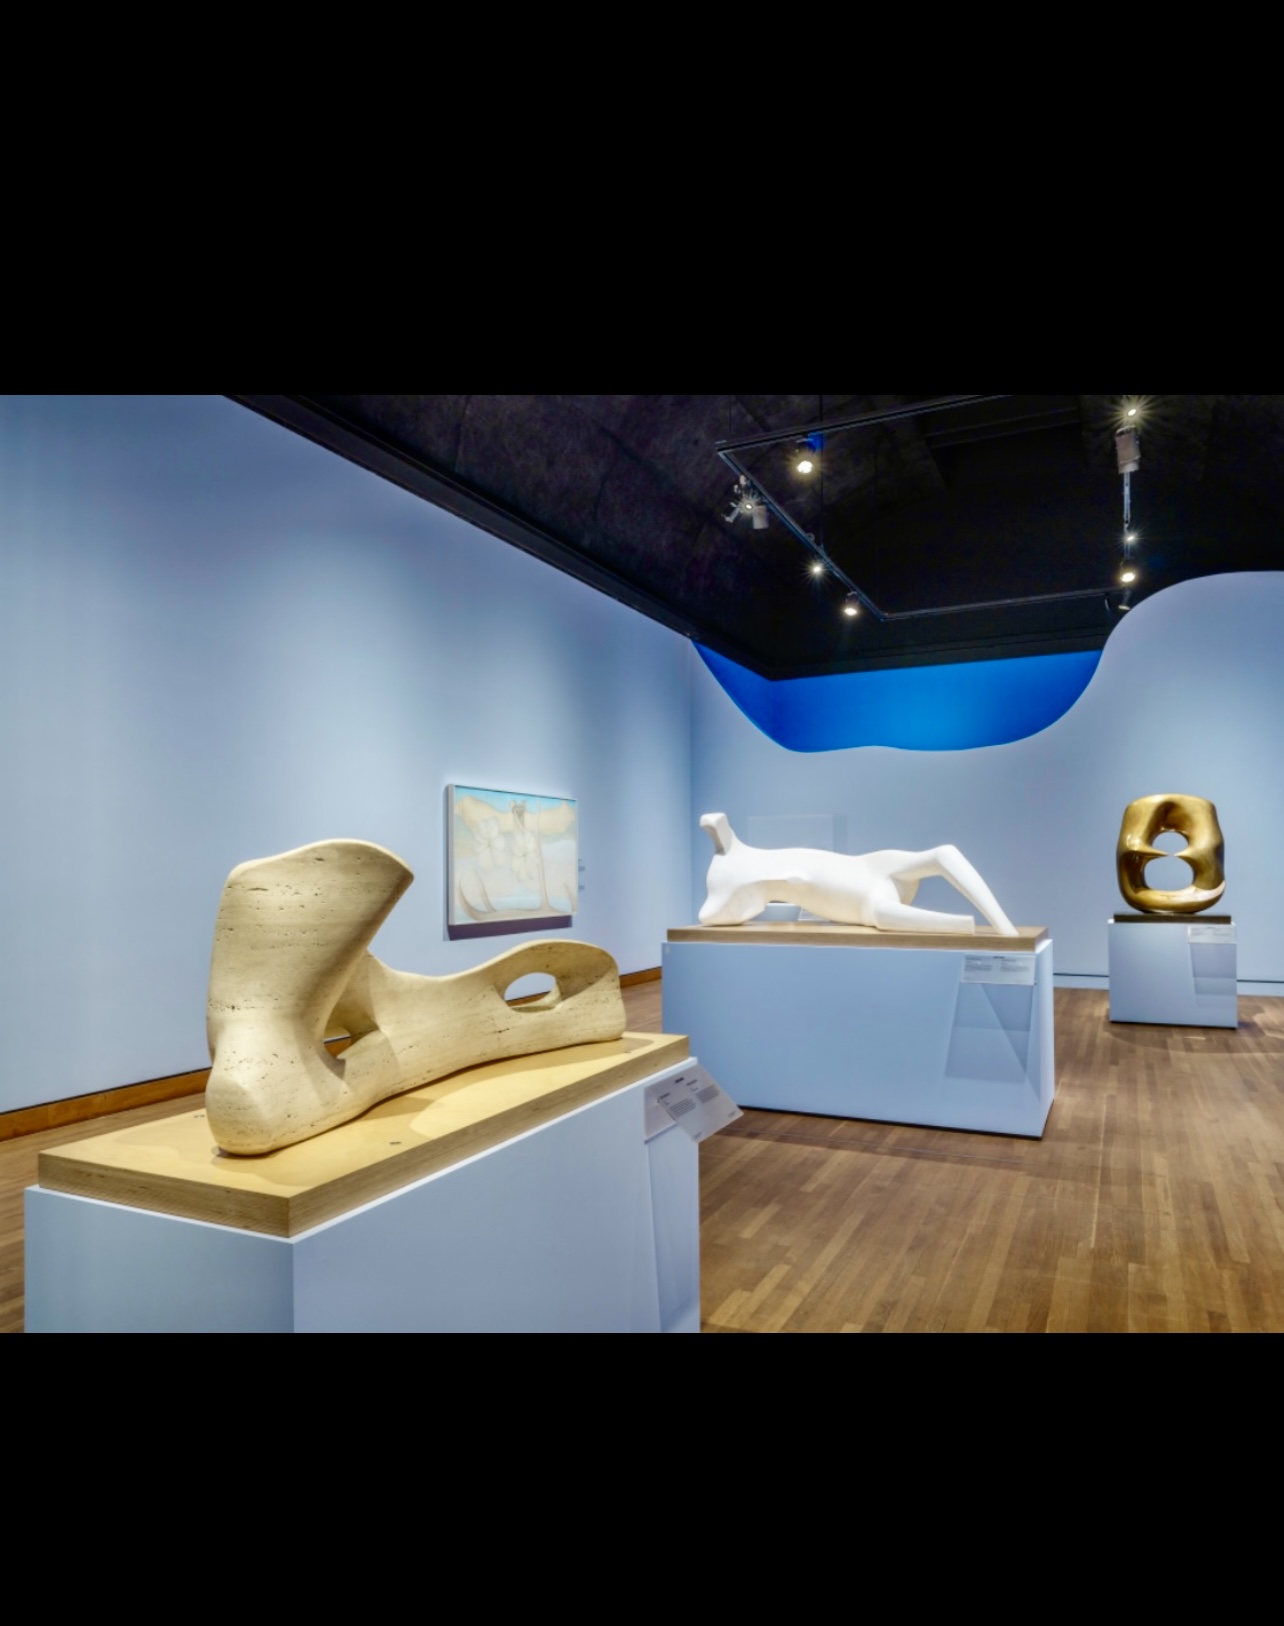 Exposition Georgia O’Keeffe et Henry Moore : géants de l’art moderne au Musée des beaux-arts de Montréal. © Georgia O’Keeffe Museum